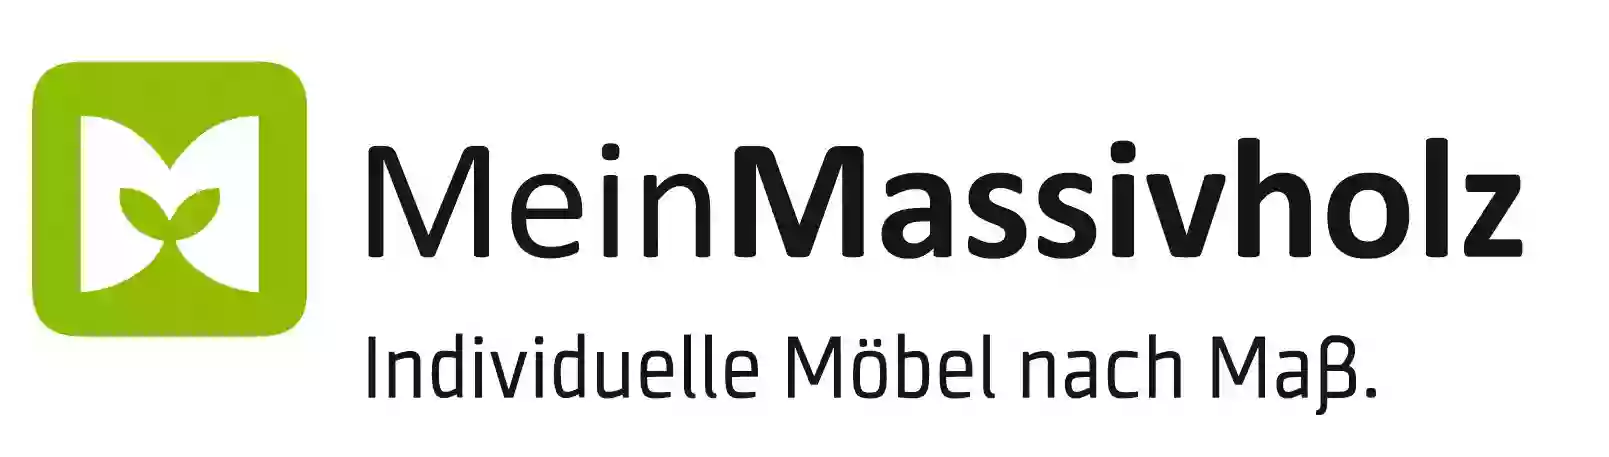 MeinMassivholz.com